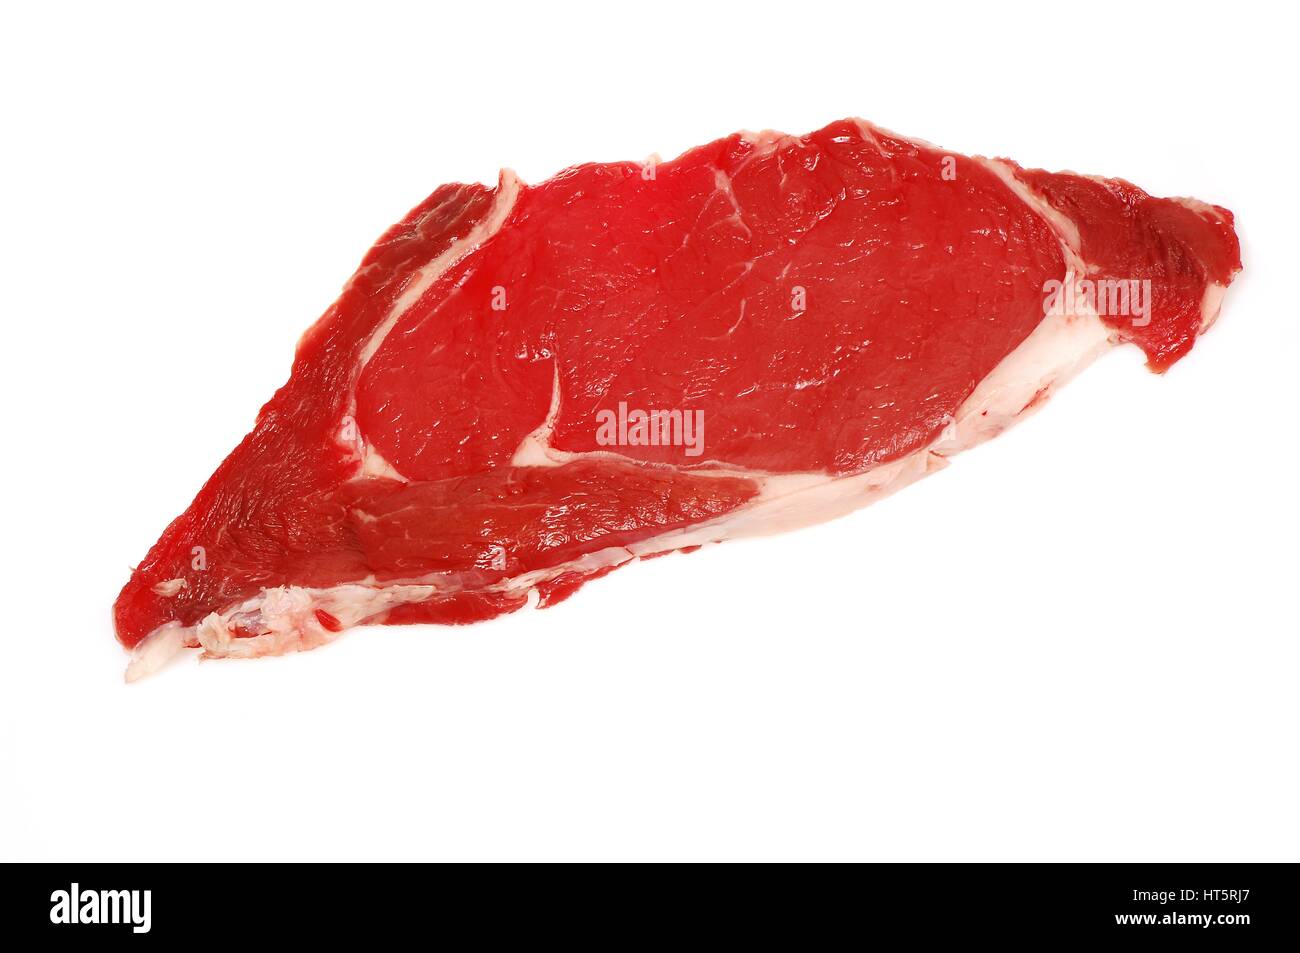 Rohes Rindfleisch Fleisch Steak isoliert auf weißem Hintergrund Stockfoto